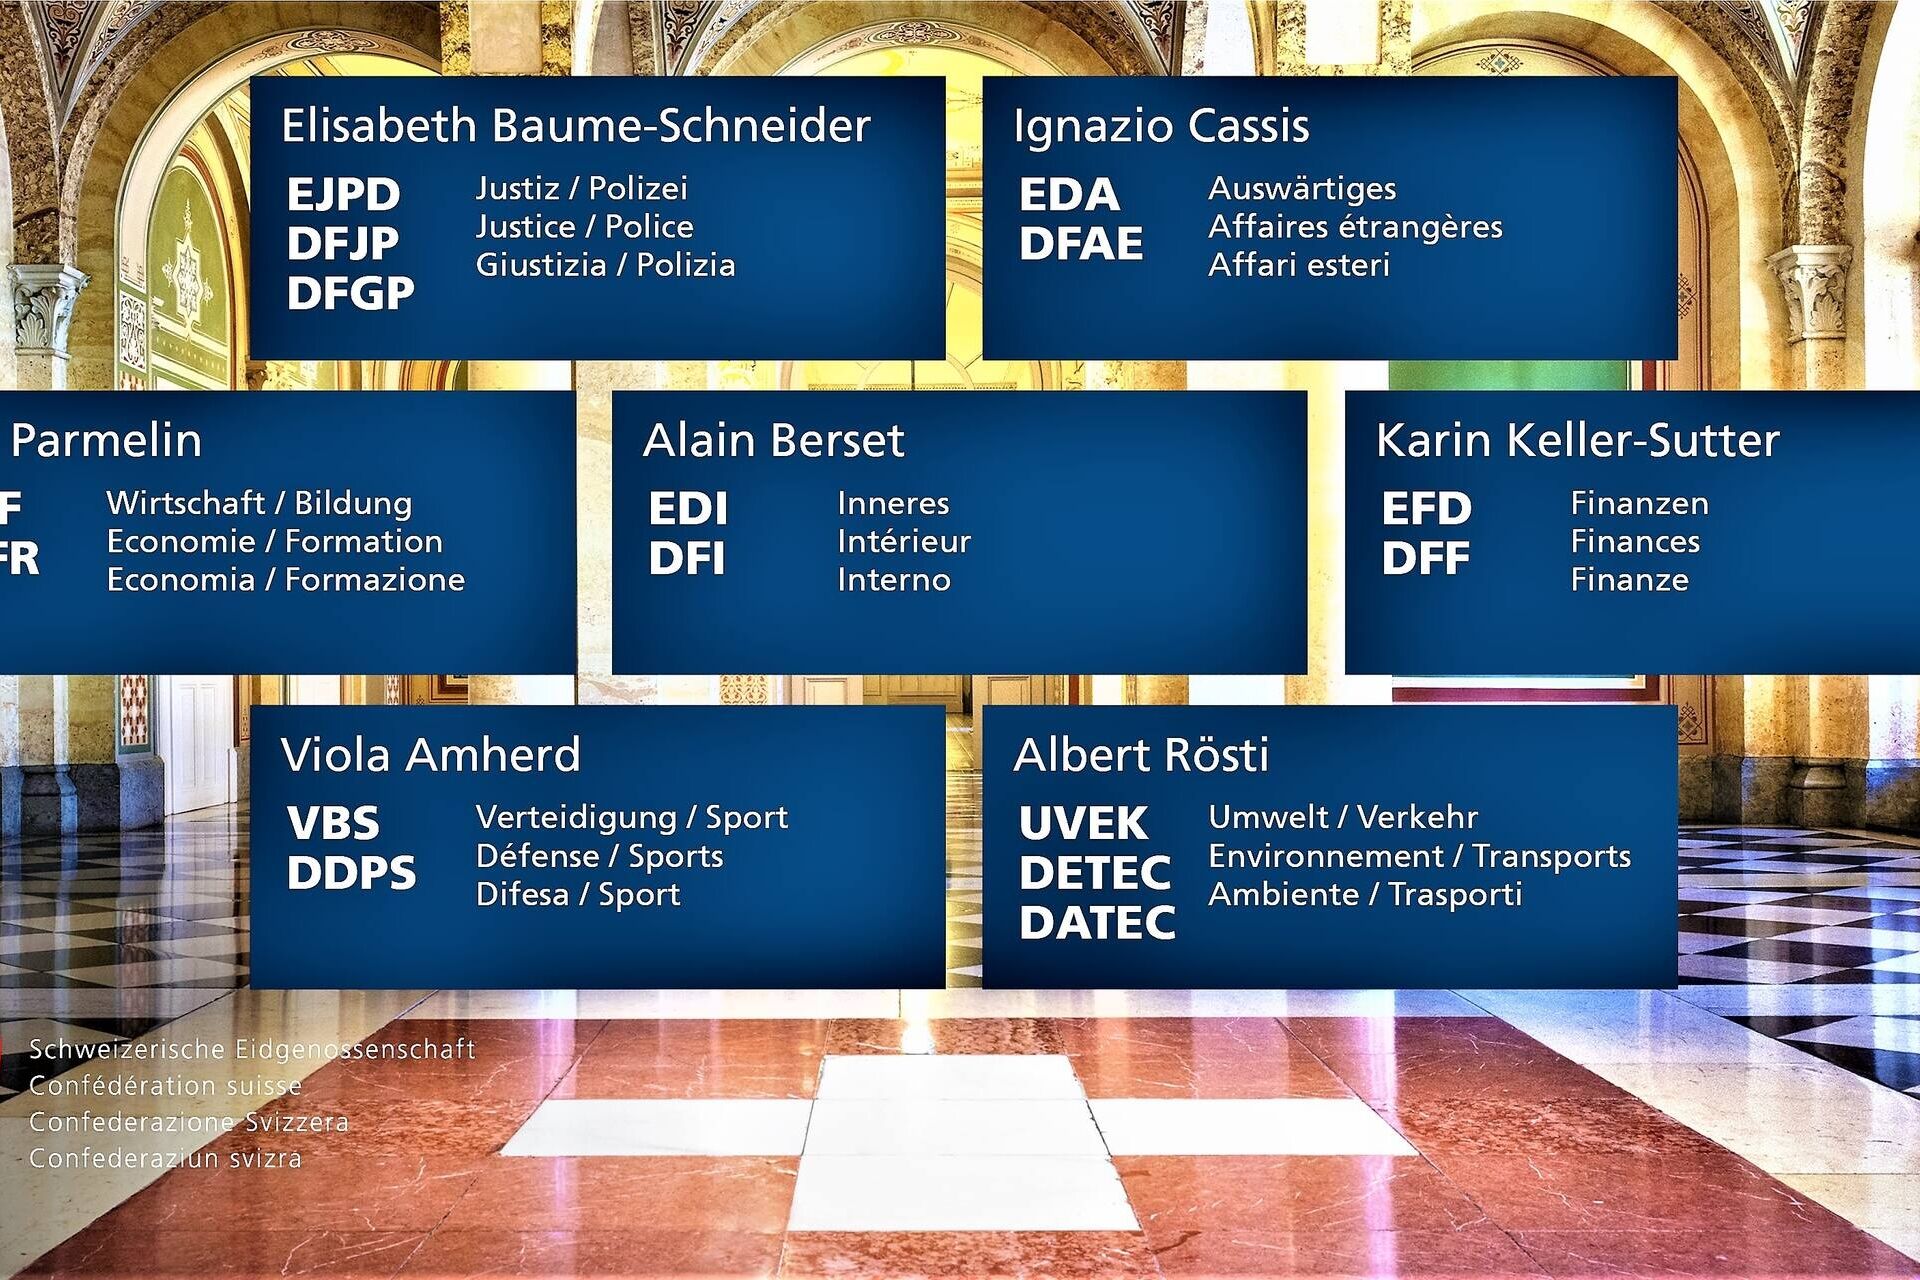 Conselho Federal: a composição do Conselho Federal da Confederação Suíça em 2023 com indicação dos nomes e funções dos Conselheiros Federais